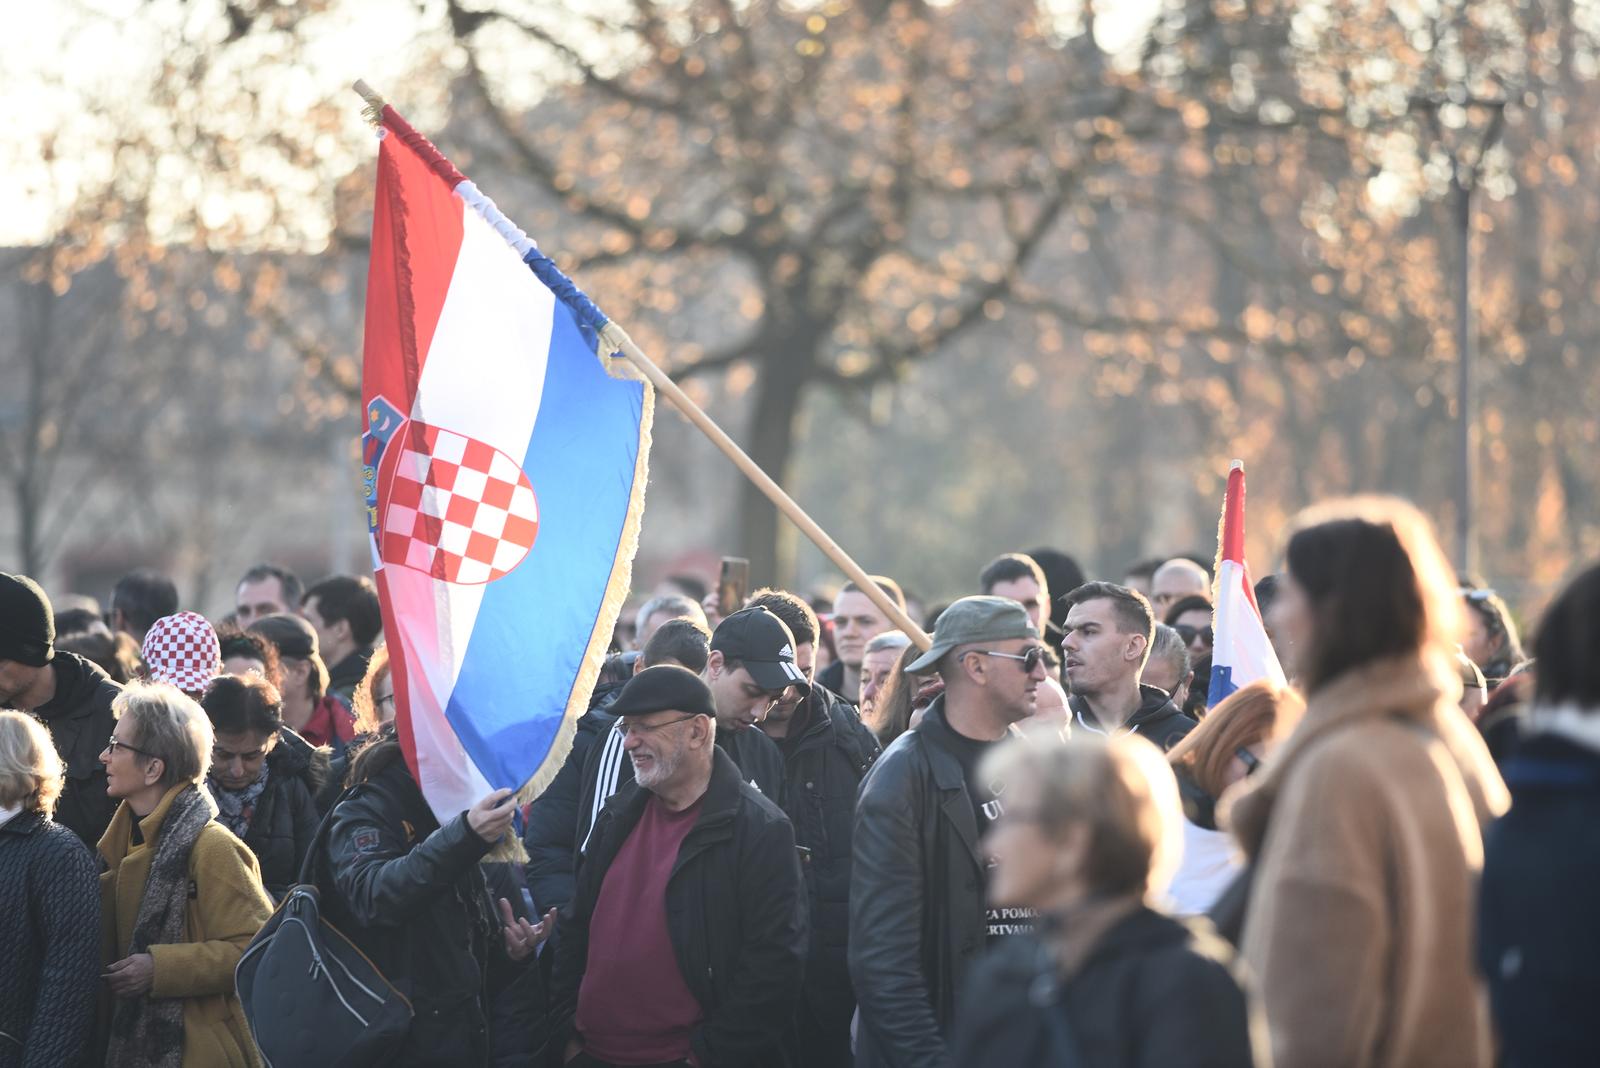 20.11.2021., Zagreb - Gradjanska udruga "Inicijativa prava i slobode" organizirala je prosvjed protiv COVID potvrda pod nazivom "ZAjedno za Slobodu" koji je krenuo s lokacije Trga Francuske Republike te je odrediste na Trgu bana Josipa Jelacica.